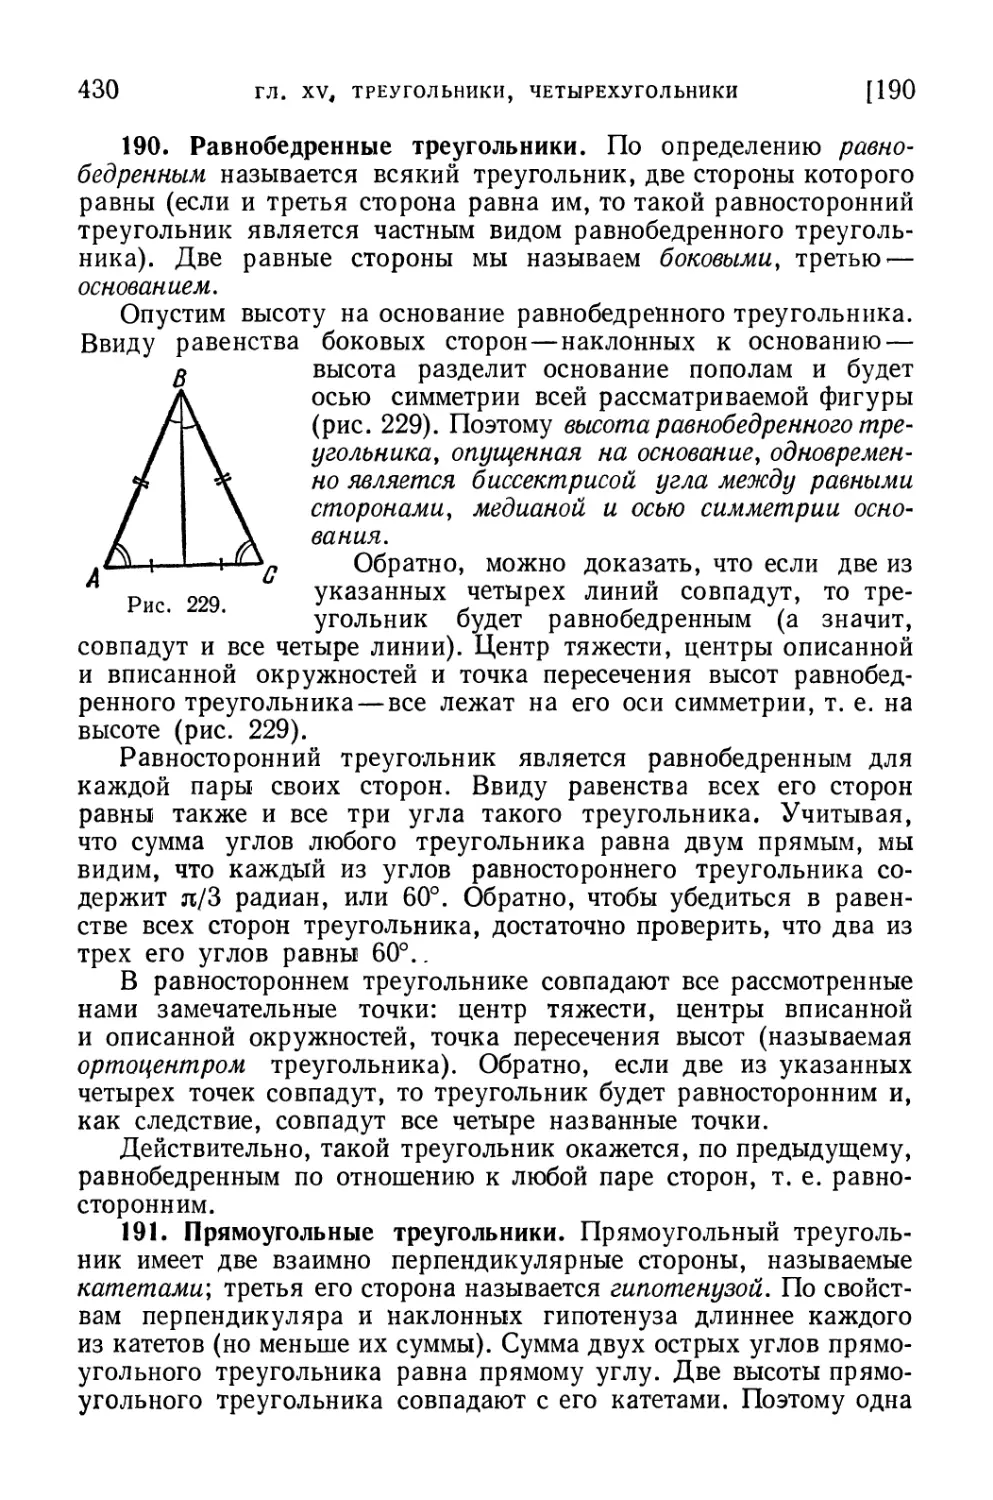 190. Равнобедренные треугольники
191. Прямоугольные треугольники